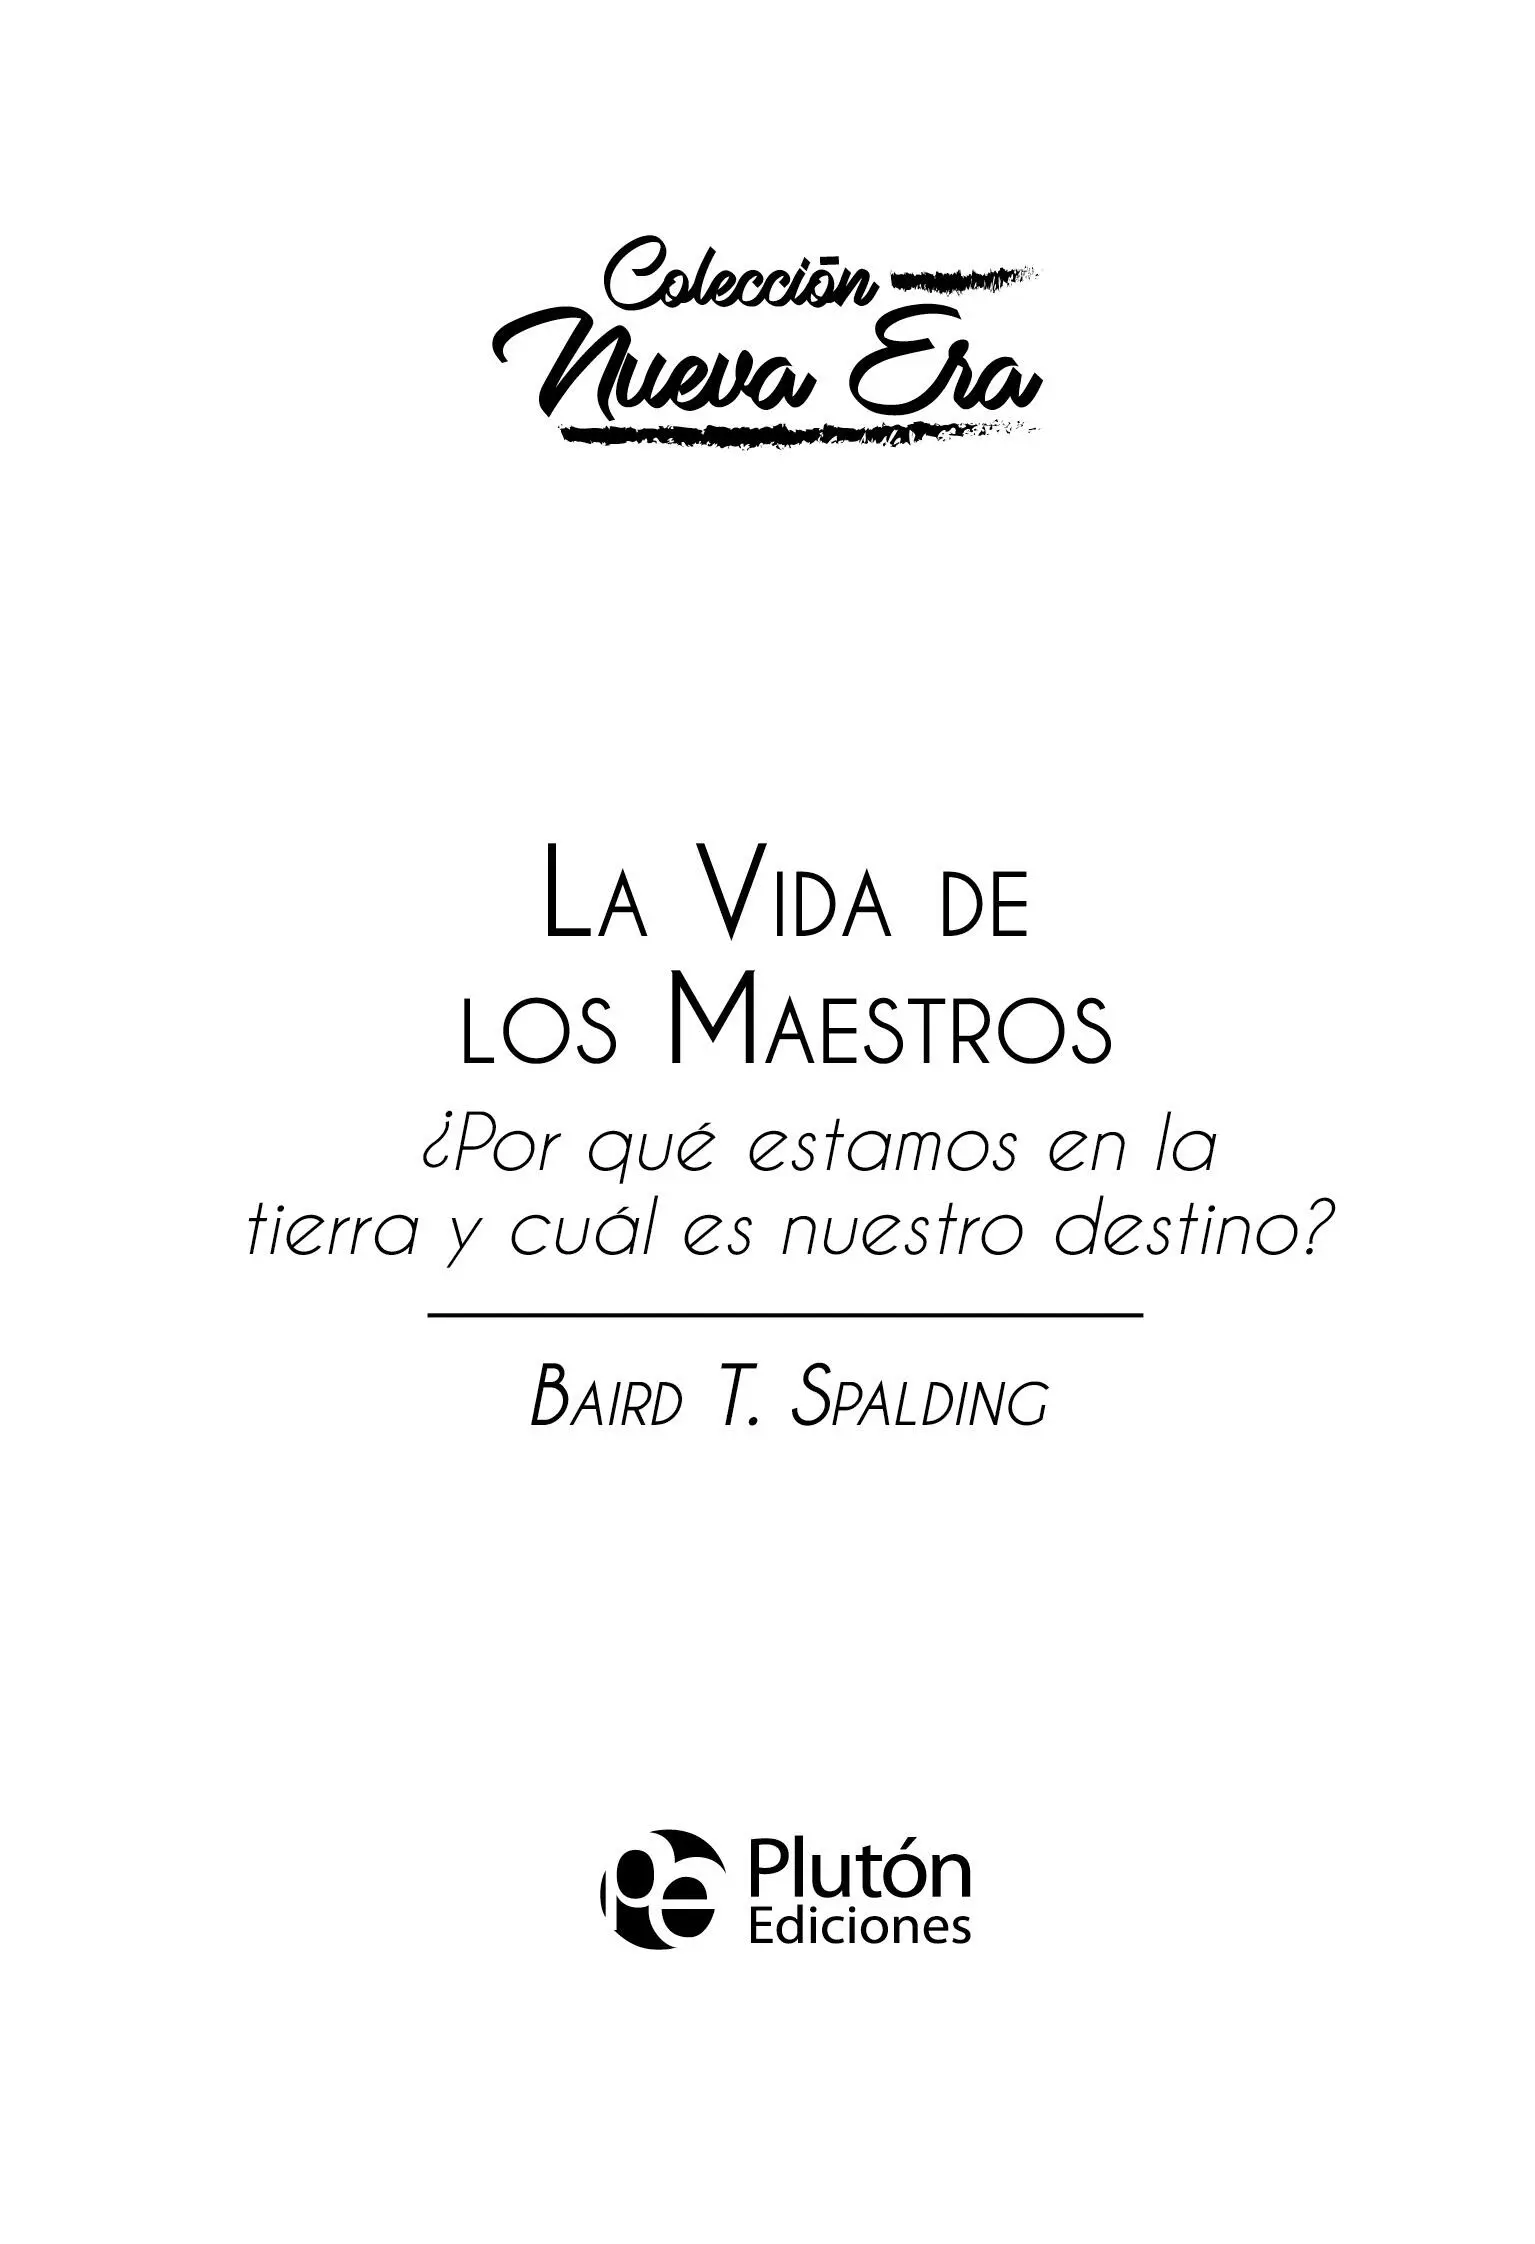 Plutón Ediciones X s l 2021 Diseño de cubierta y maquetación Saul Rojas - фото 1